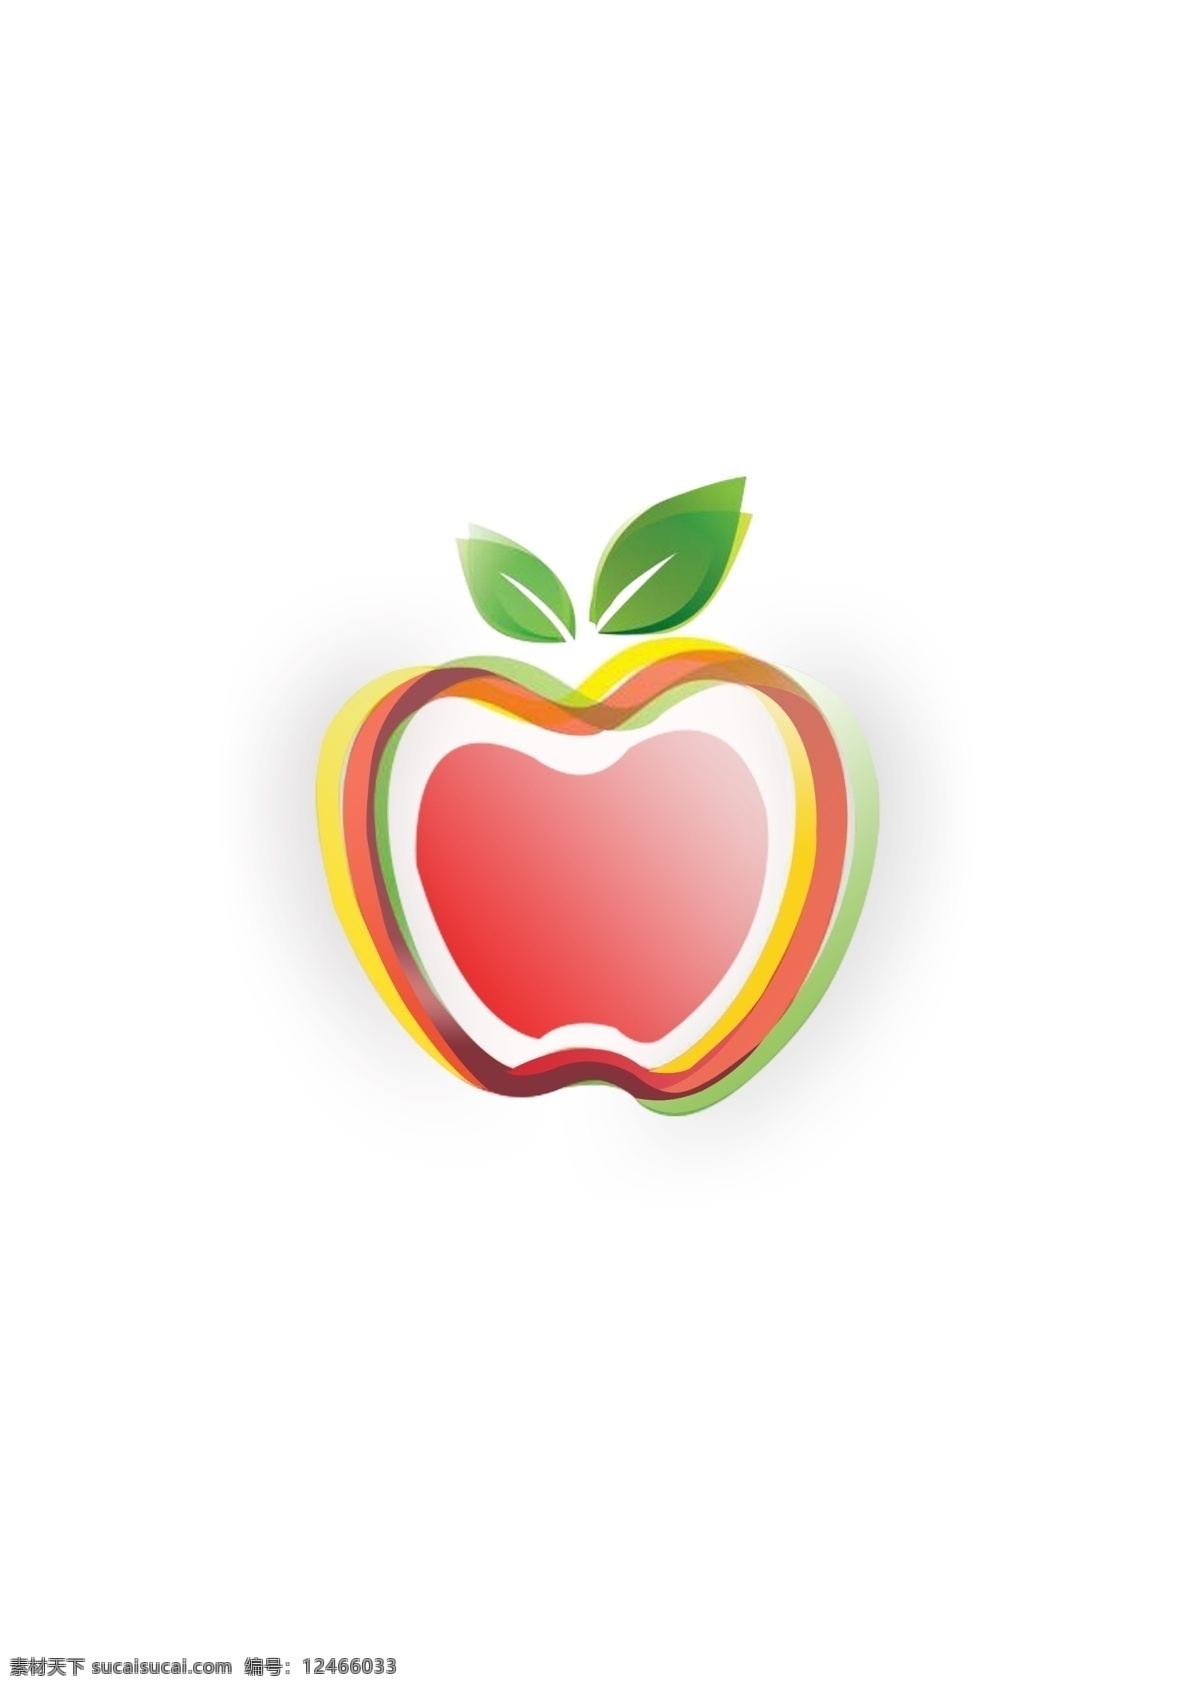 苹果图形创意 苹果创意 ps图形创意 苹果 水果图形创意 北大青鸟 标志图标 其他图标